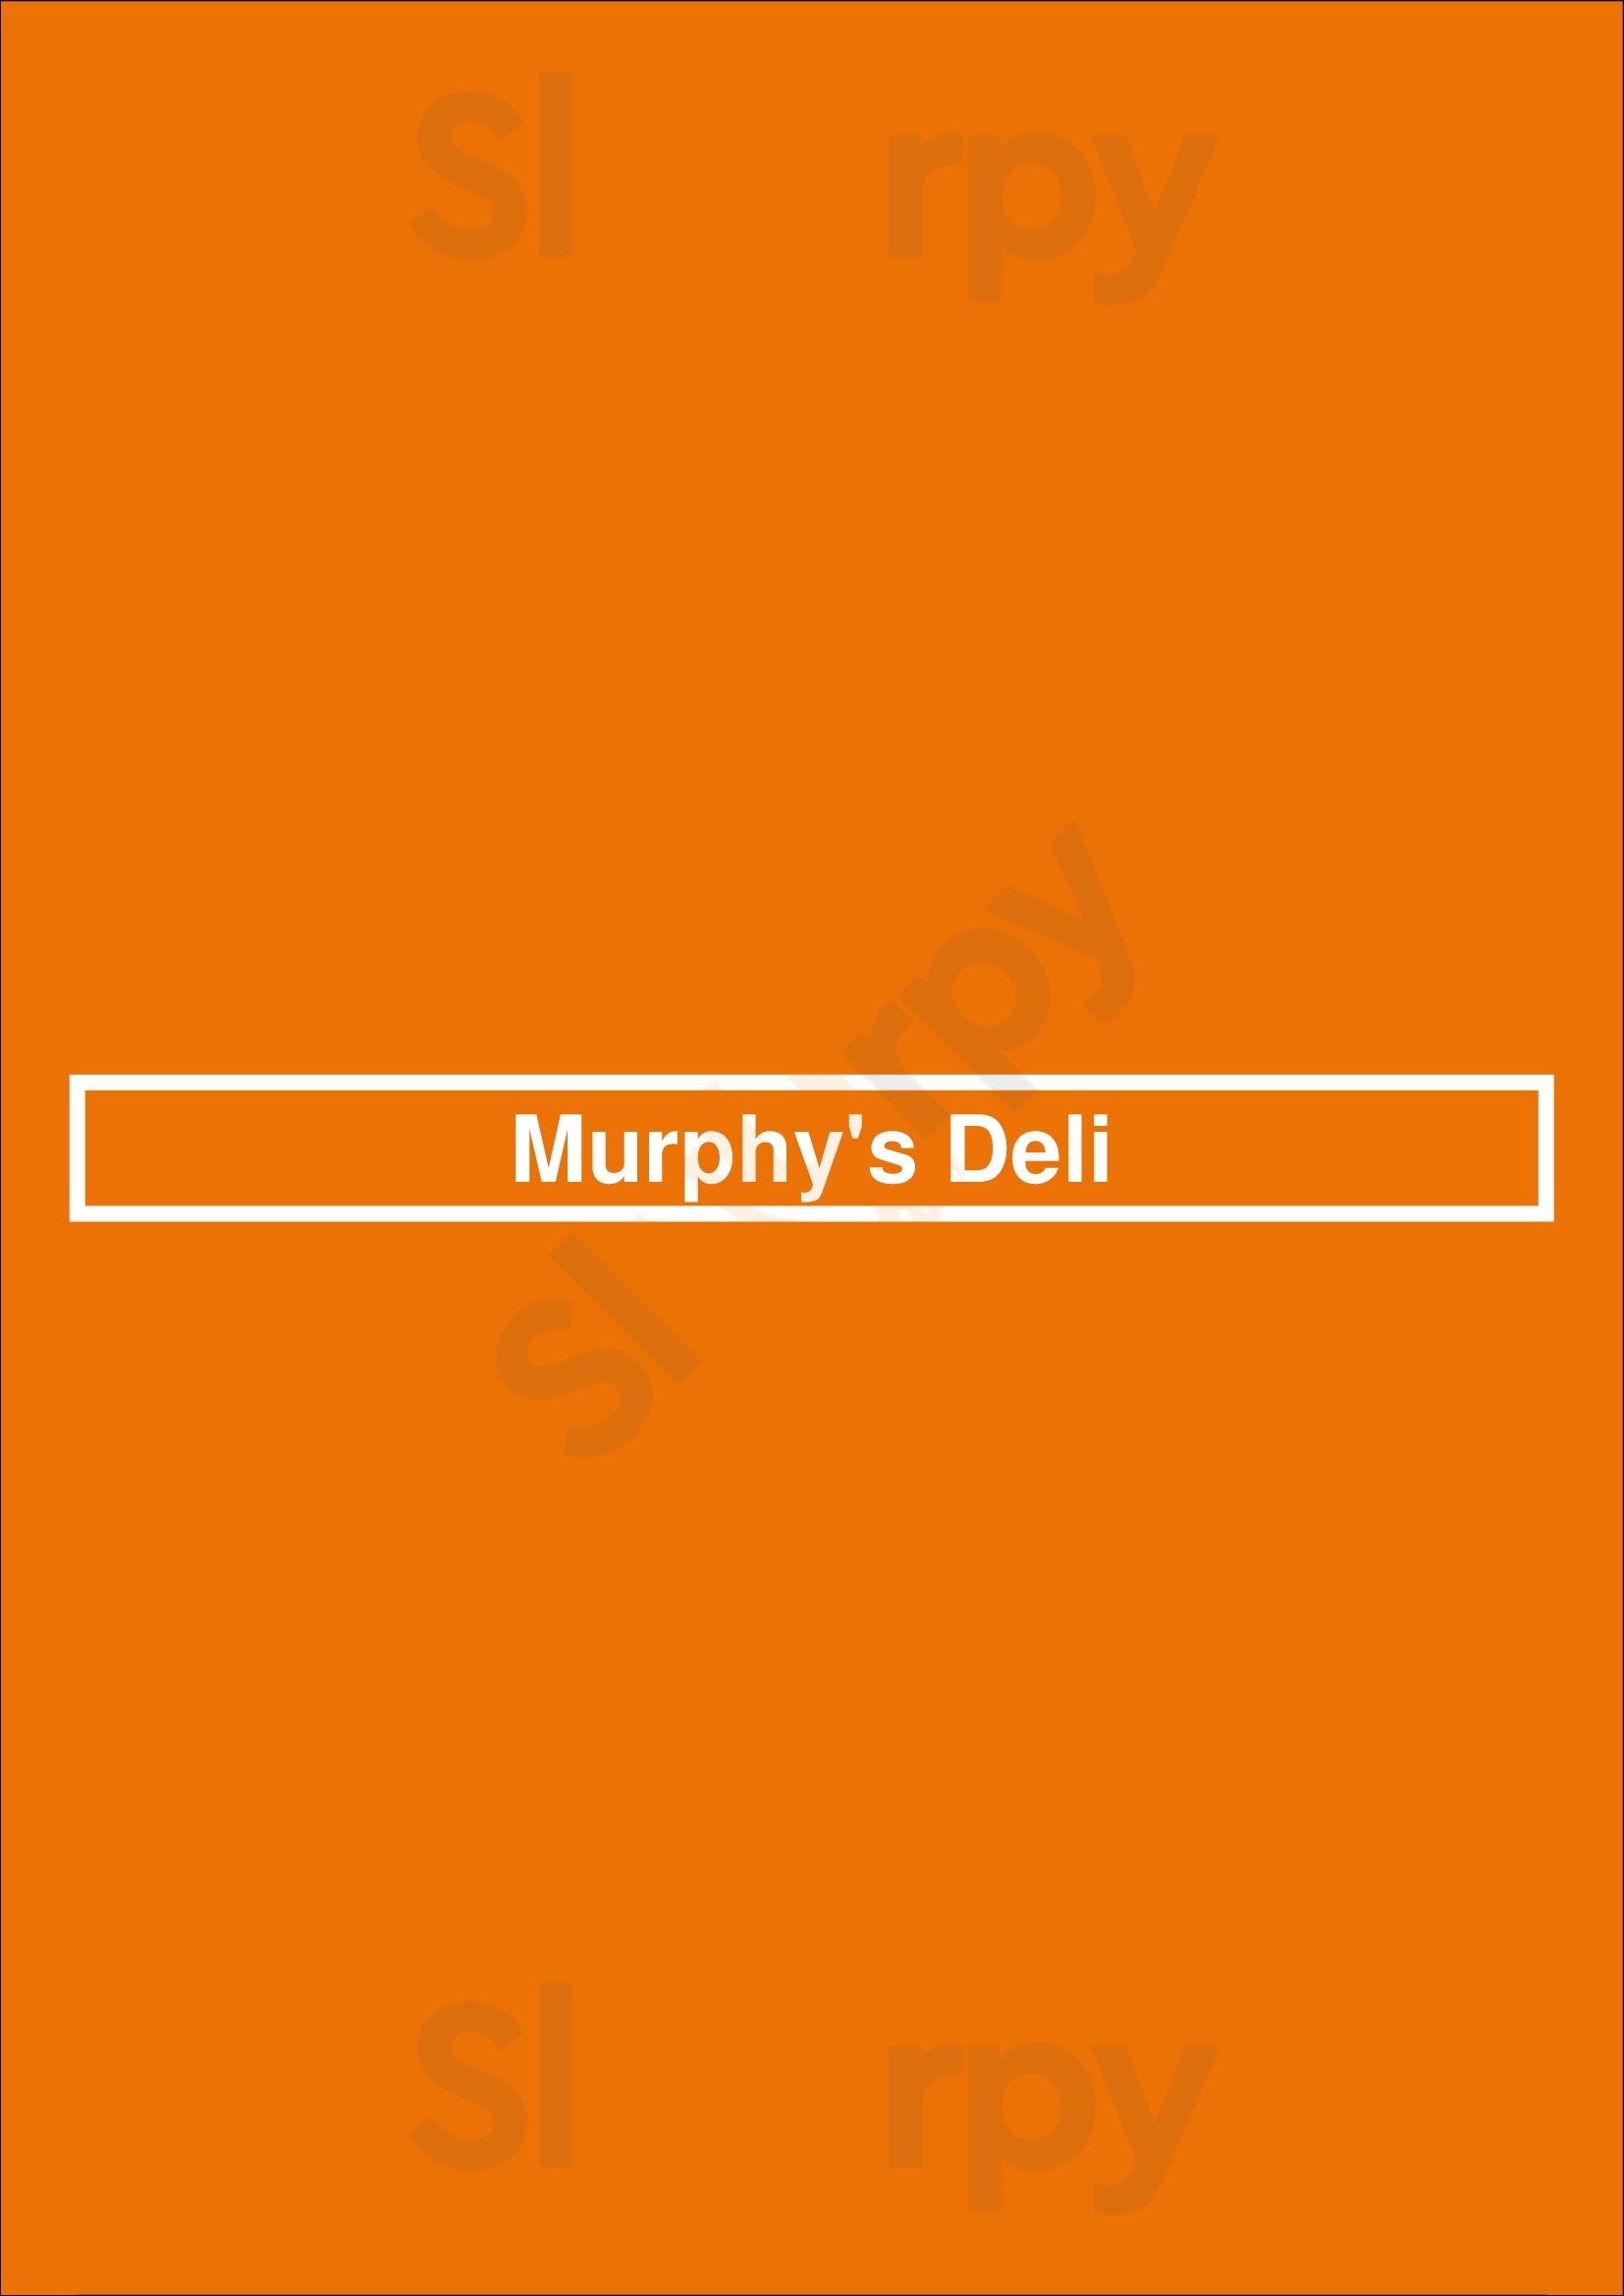 Murphy's Deli Dallas Menu - 1